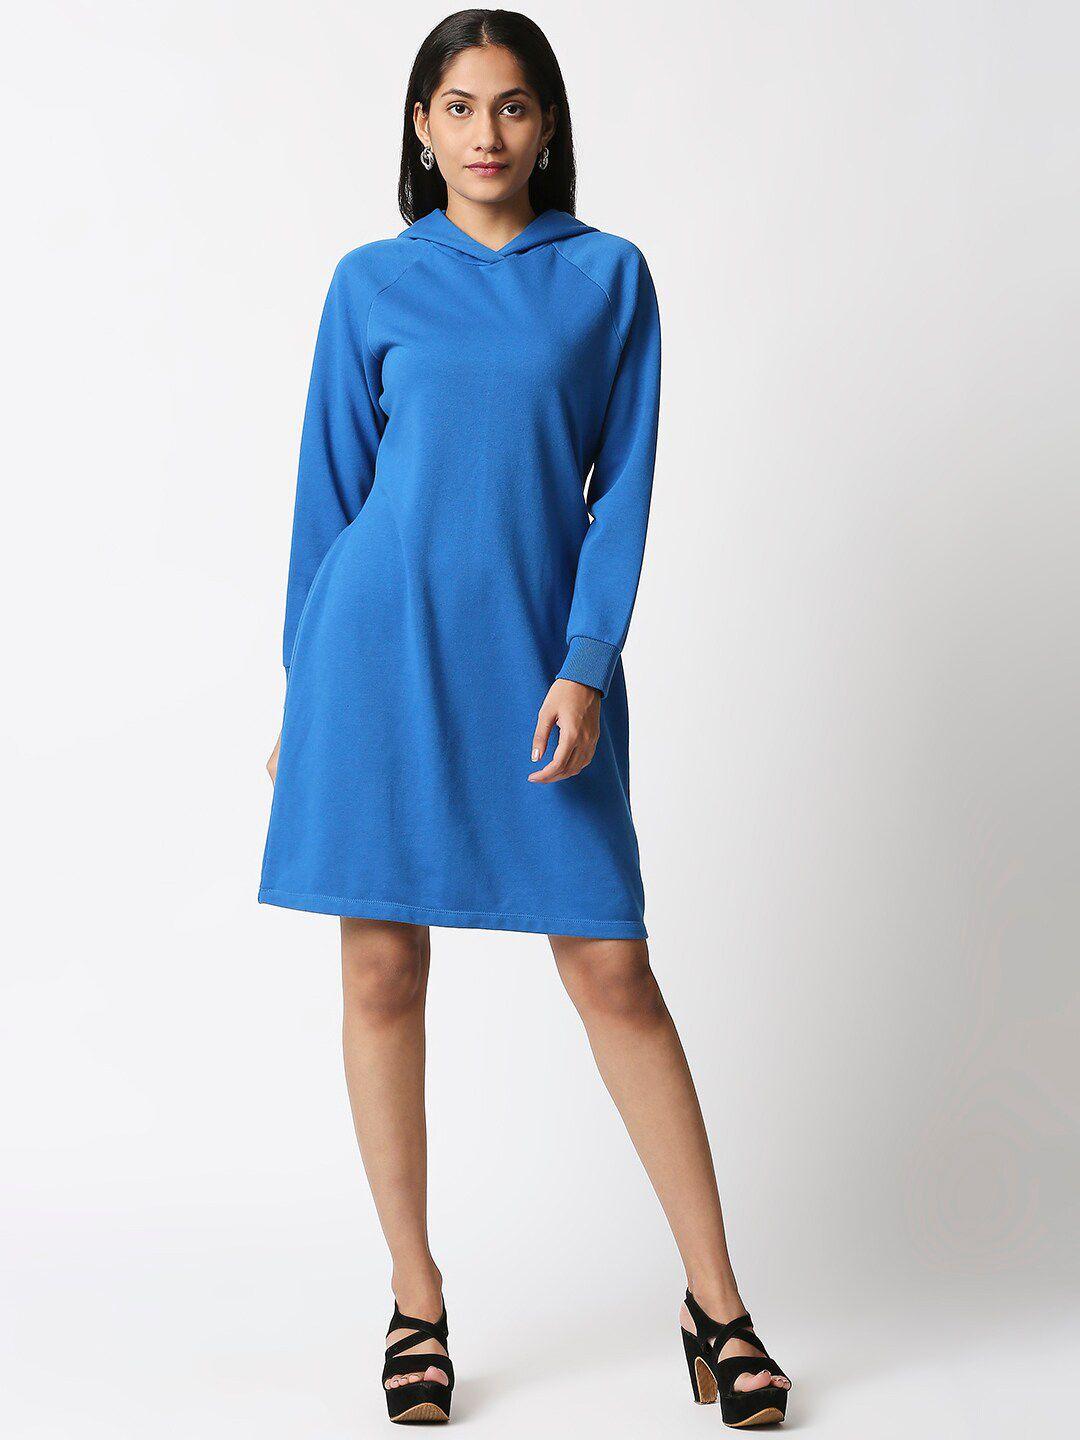 20dresses women blue t-shirt dress